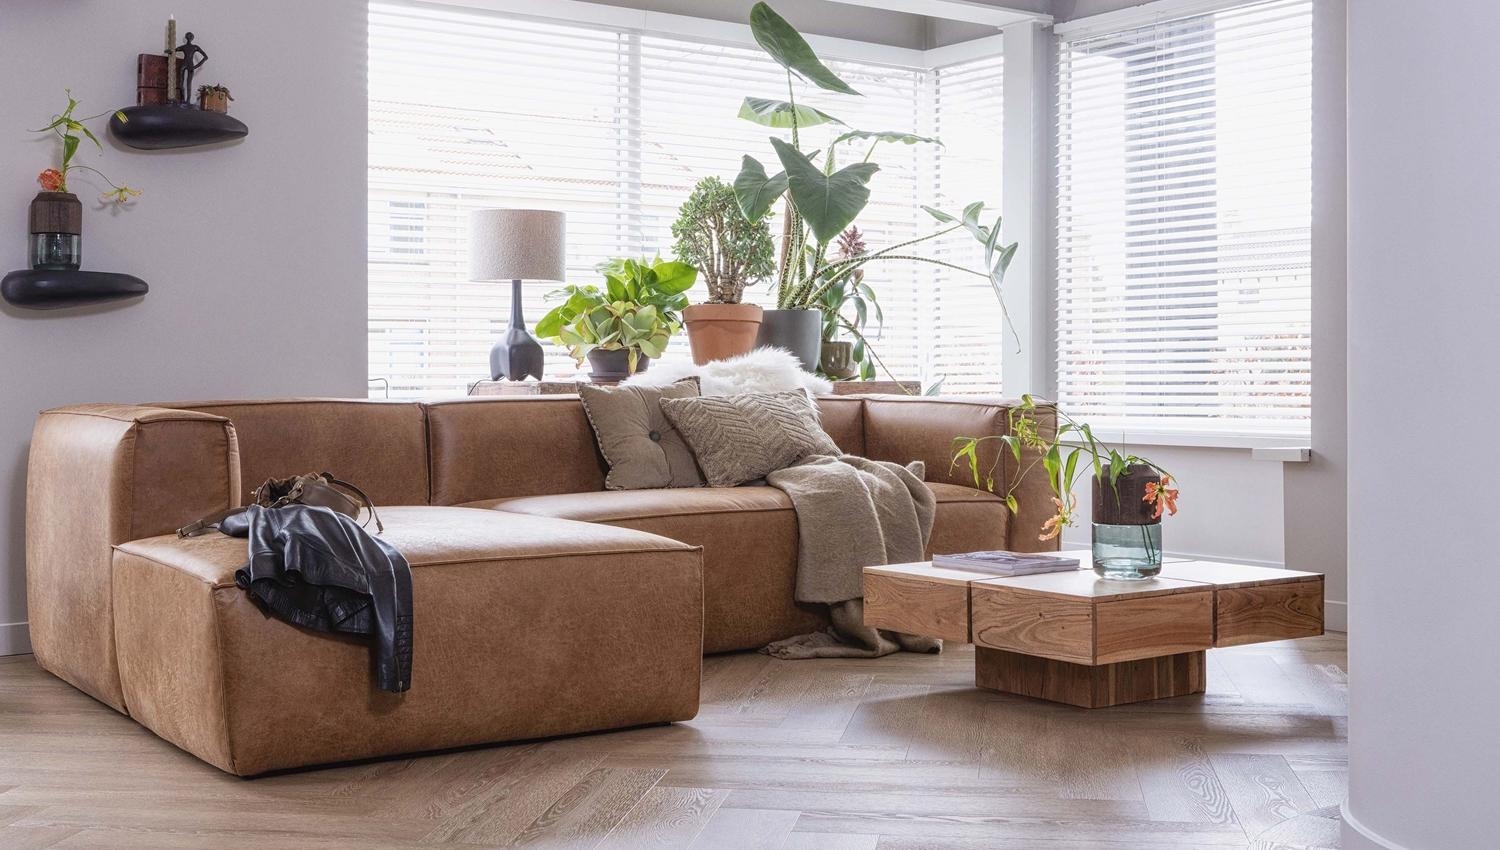 #couchliebt #sofa #wohnzimmer #couch #livingroom #couchstyle